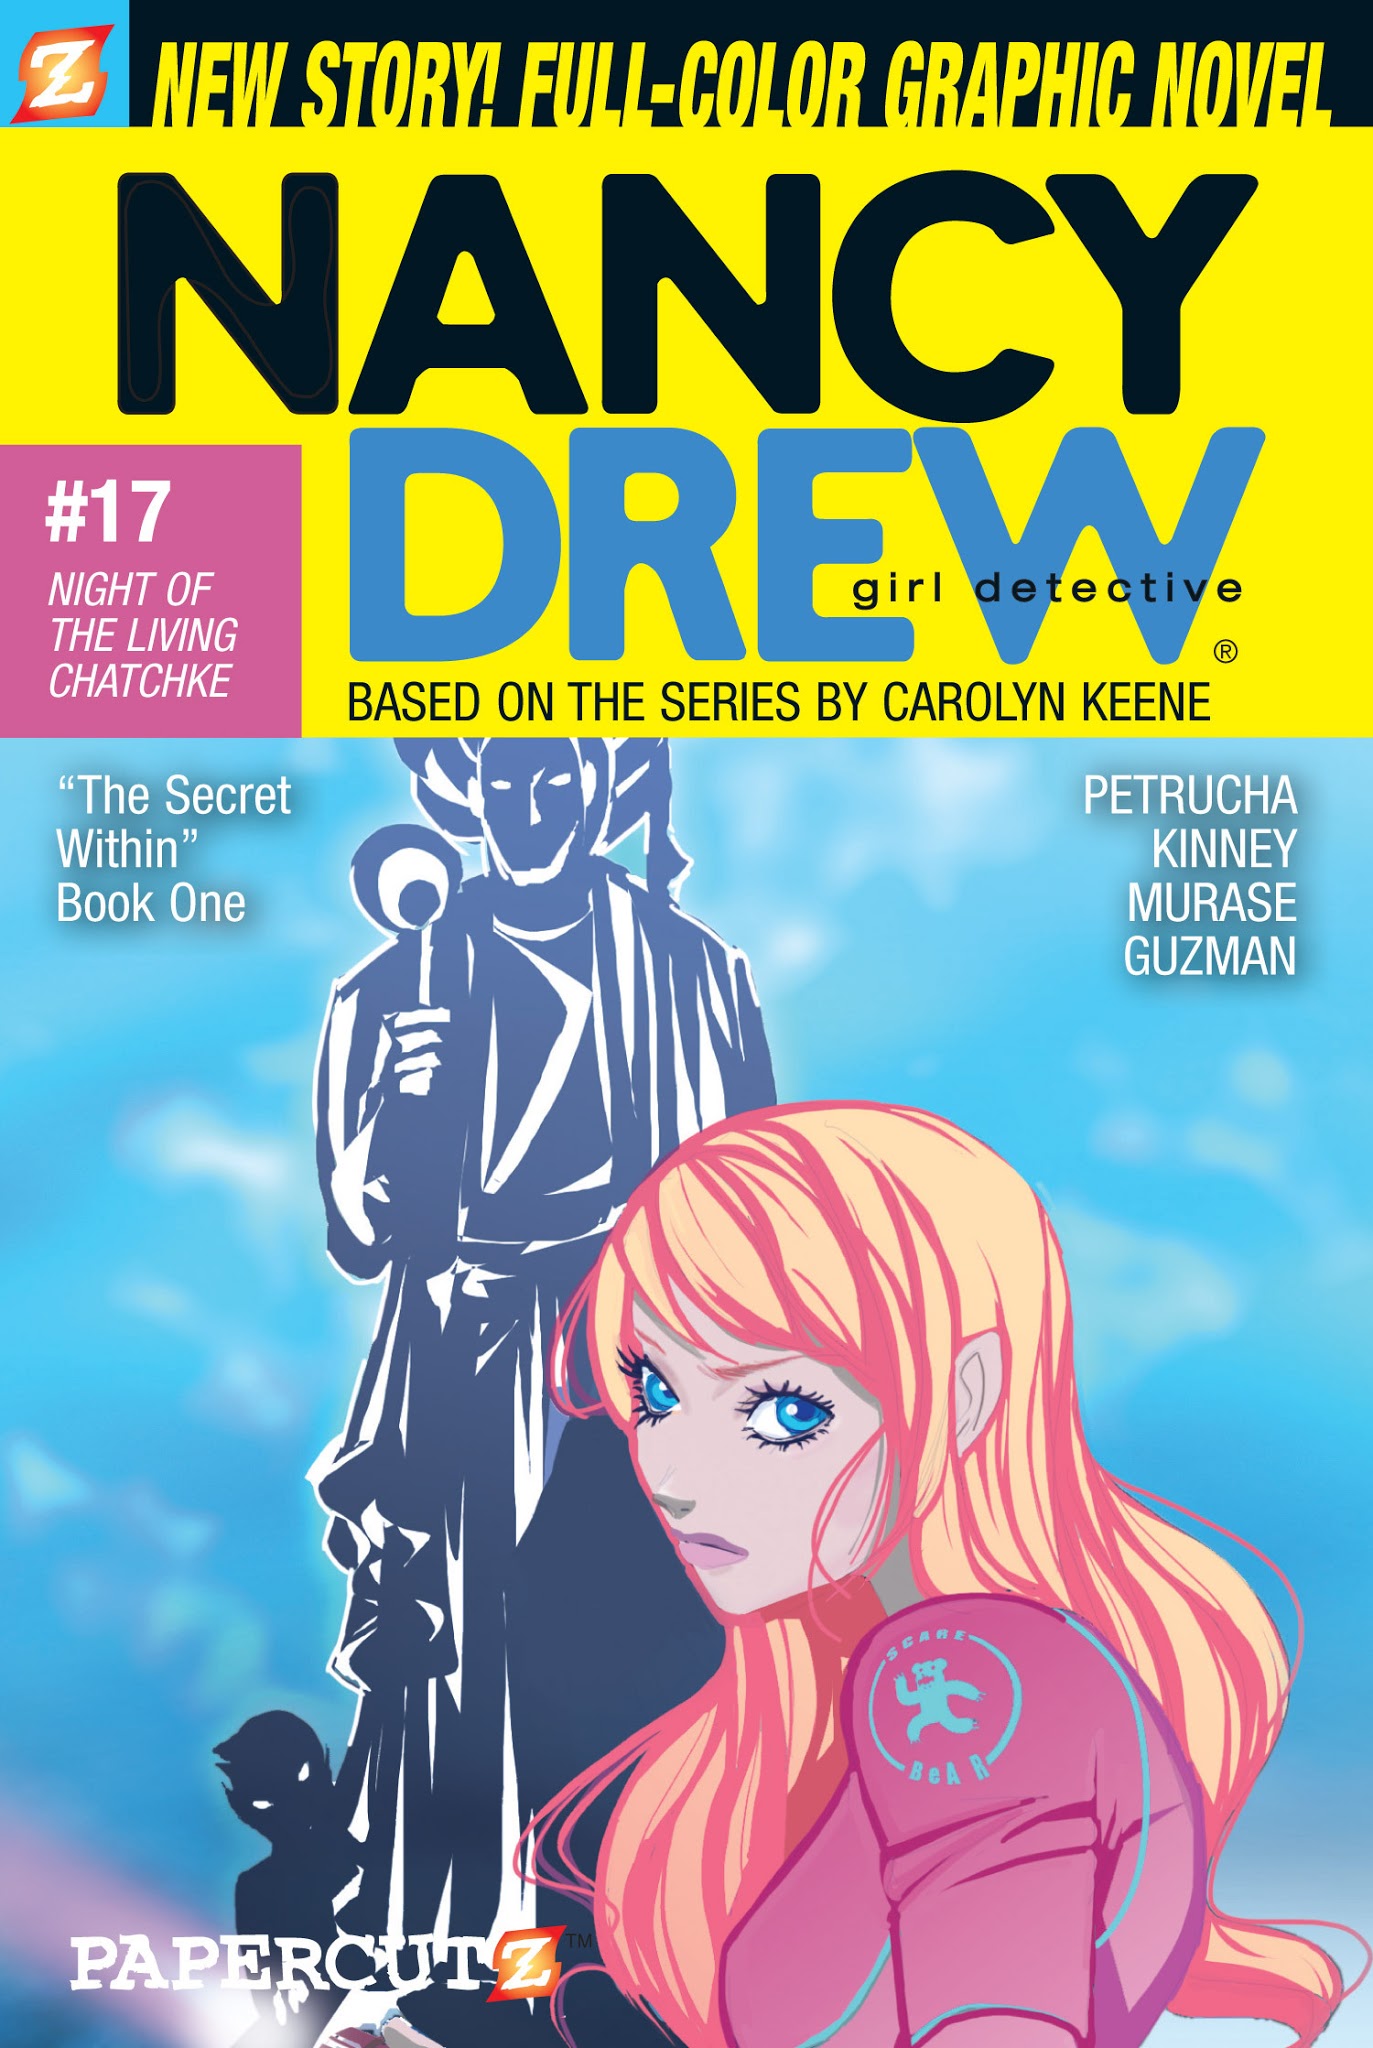 Read online Nancy Drew comic -  Issue #17 - 1